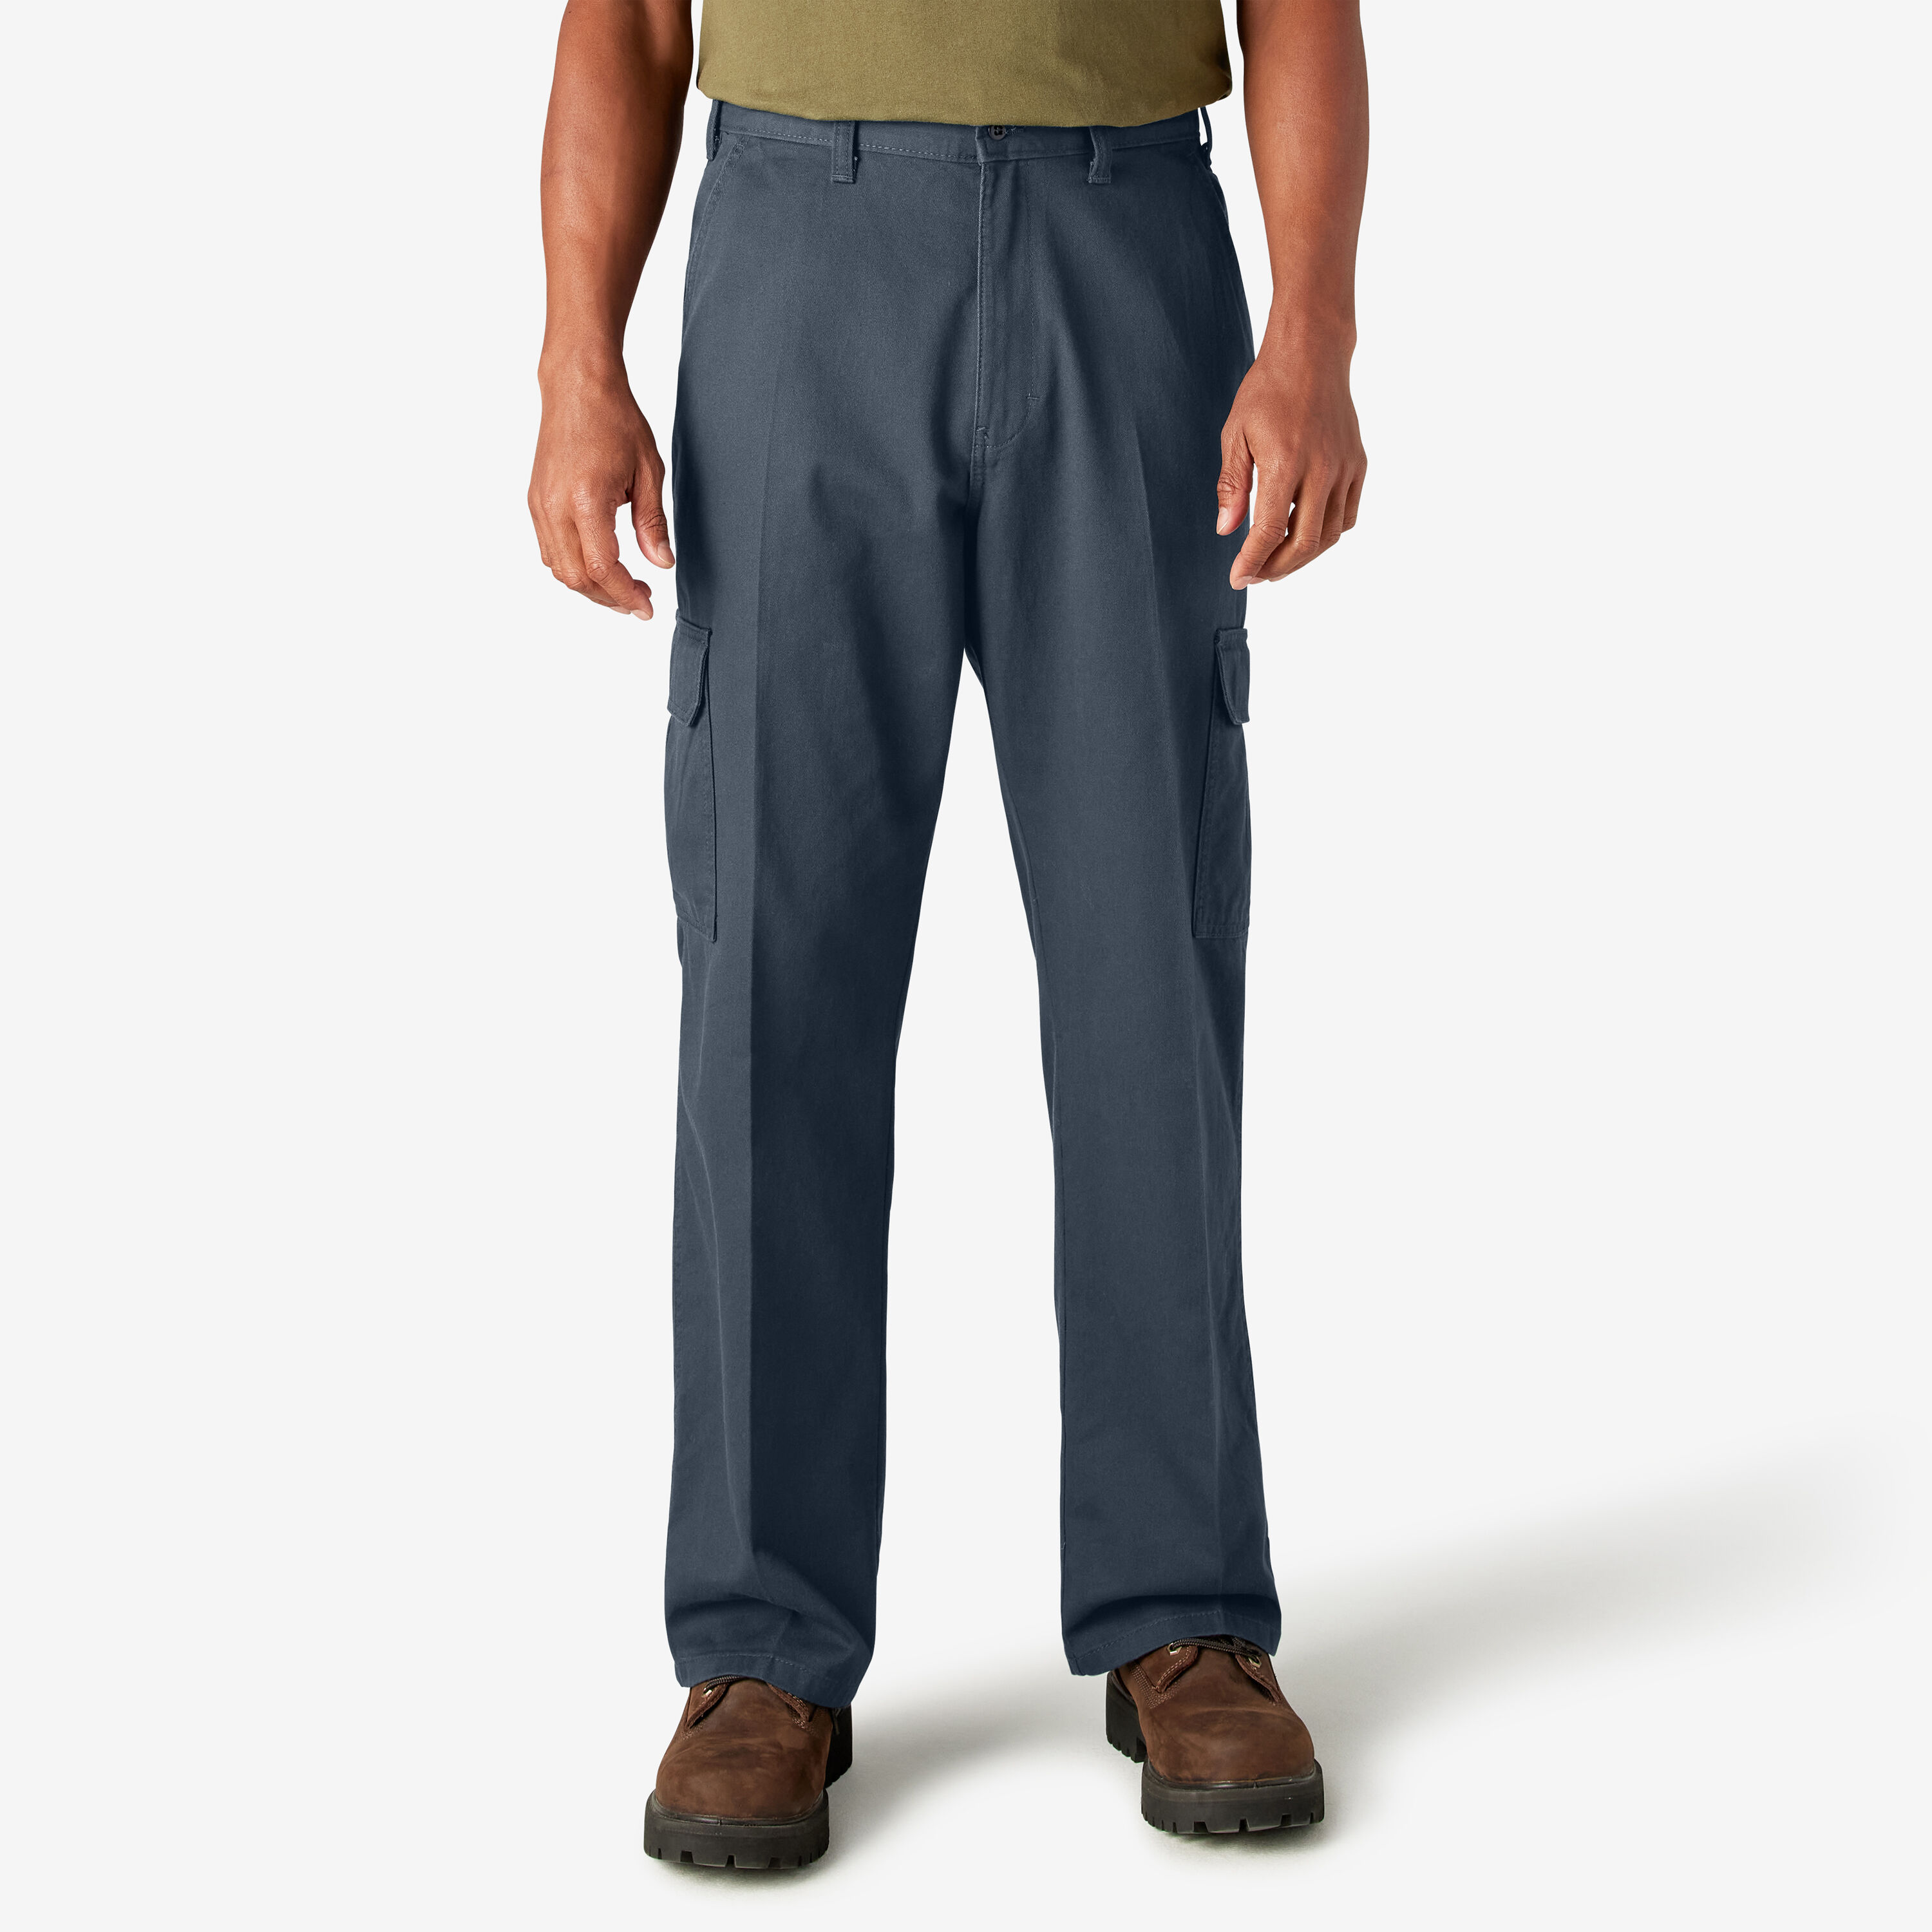 men's navy blue cargo pants